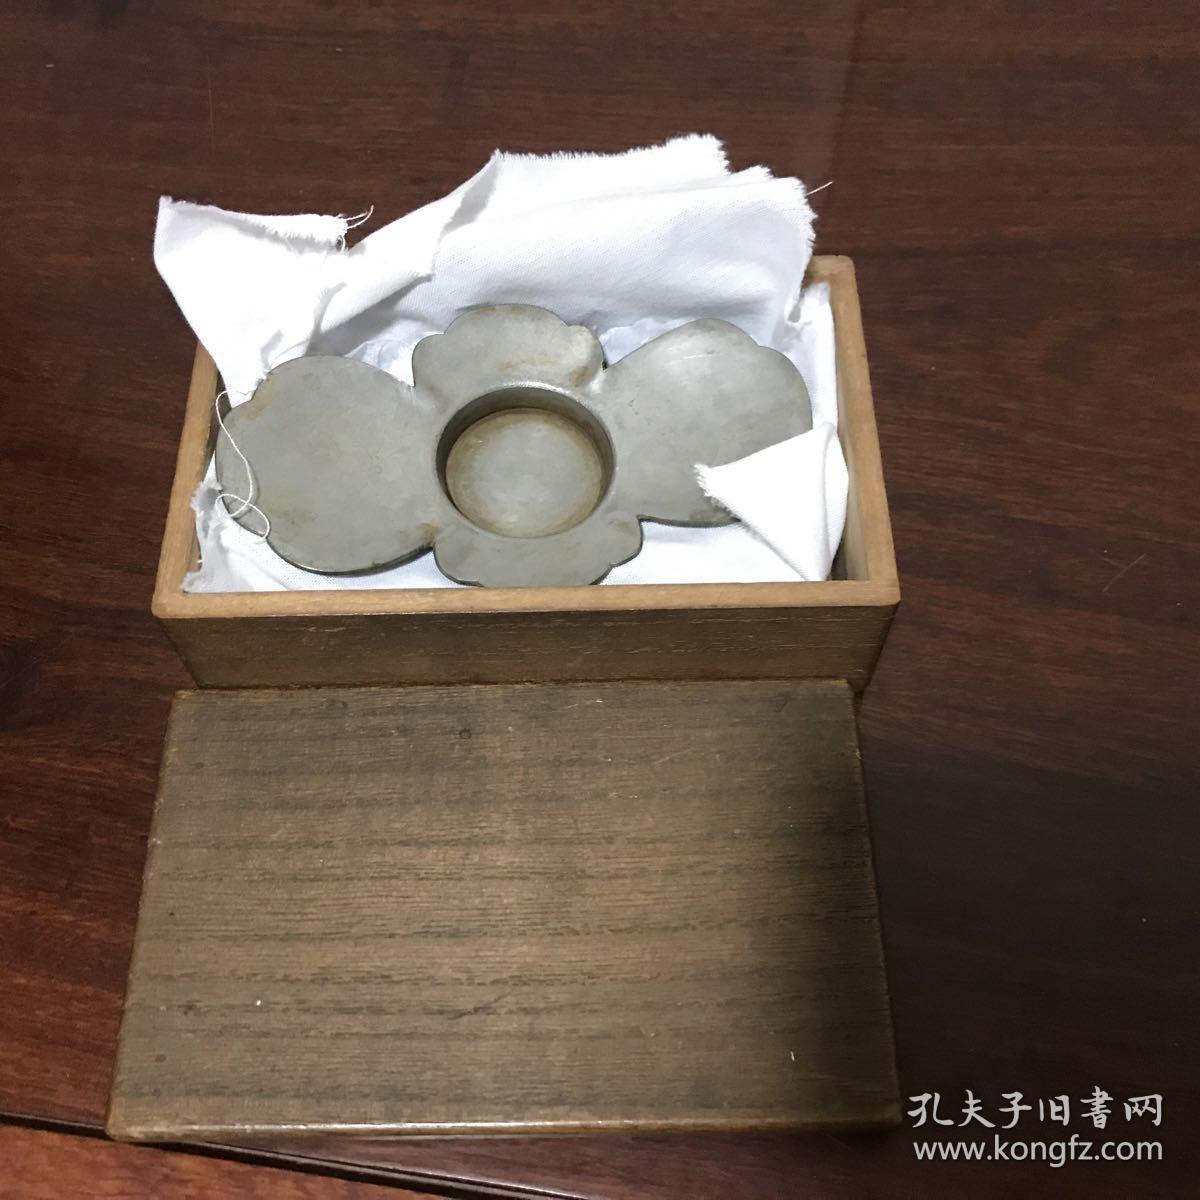 H-0614日本茶道具  老茶器 清中期老锡器木瓜茶托 5客 带木箱茶盏台 茶承 尺寸长12厘米宽7厘米